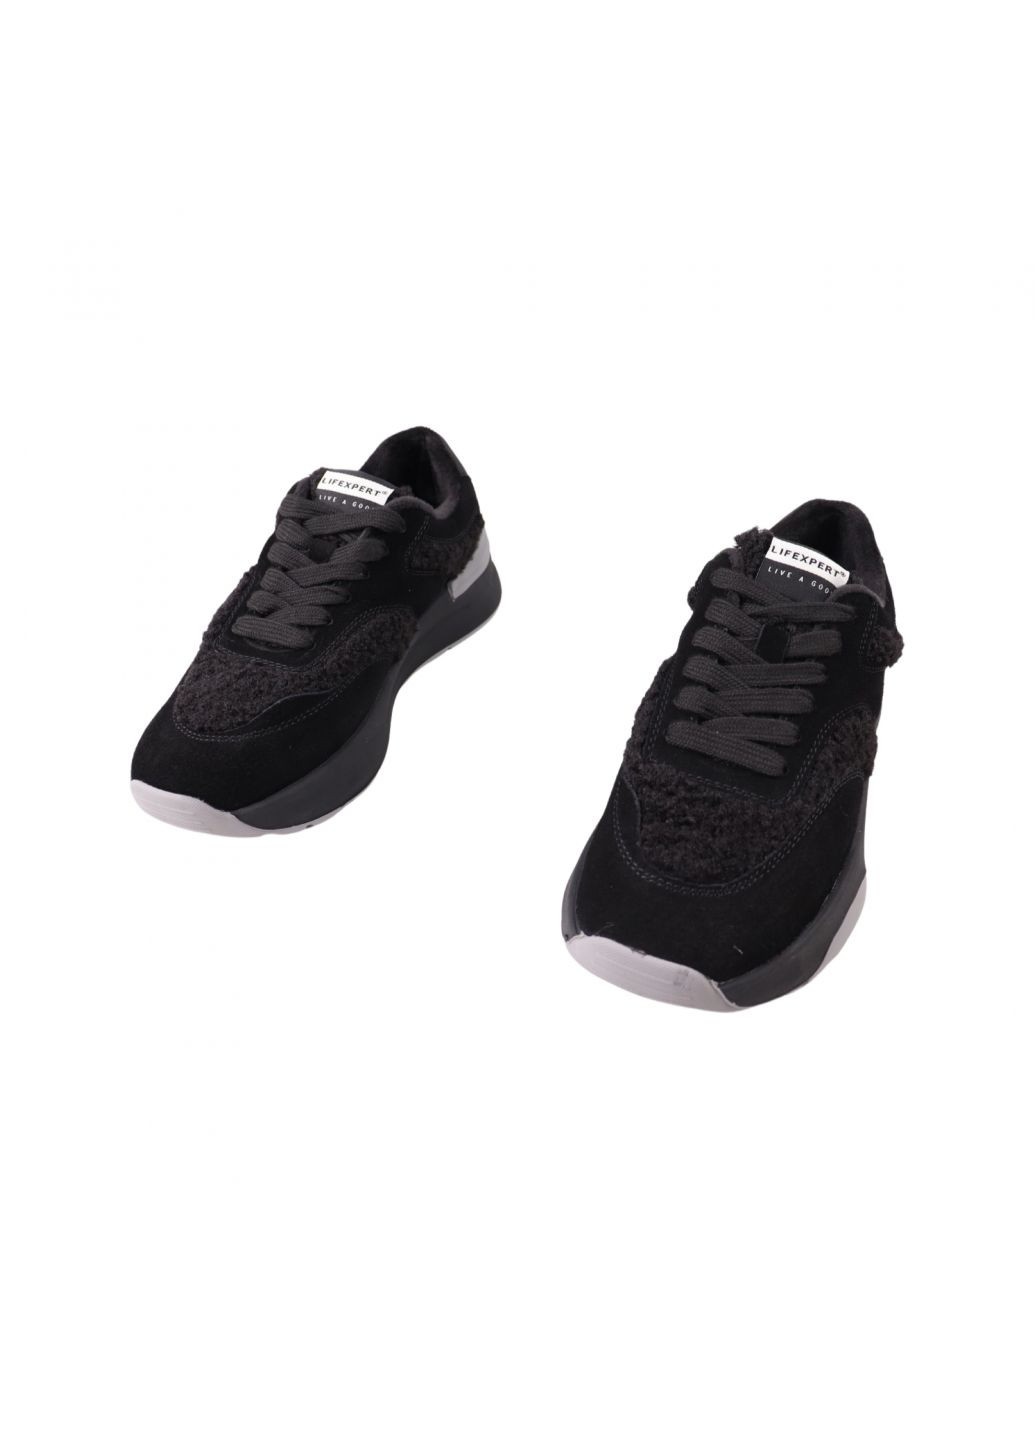 Чорні кросівки жіночі чорні натуральна замша Lifexpert 1428-23DK